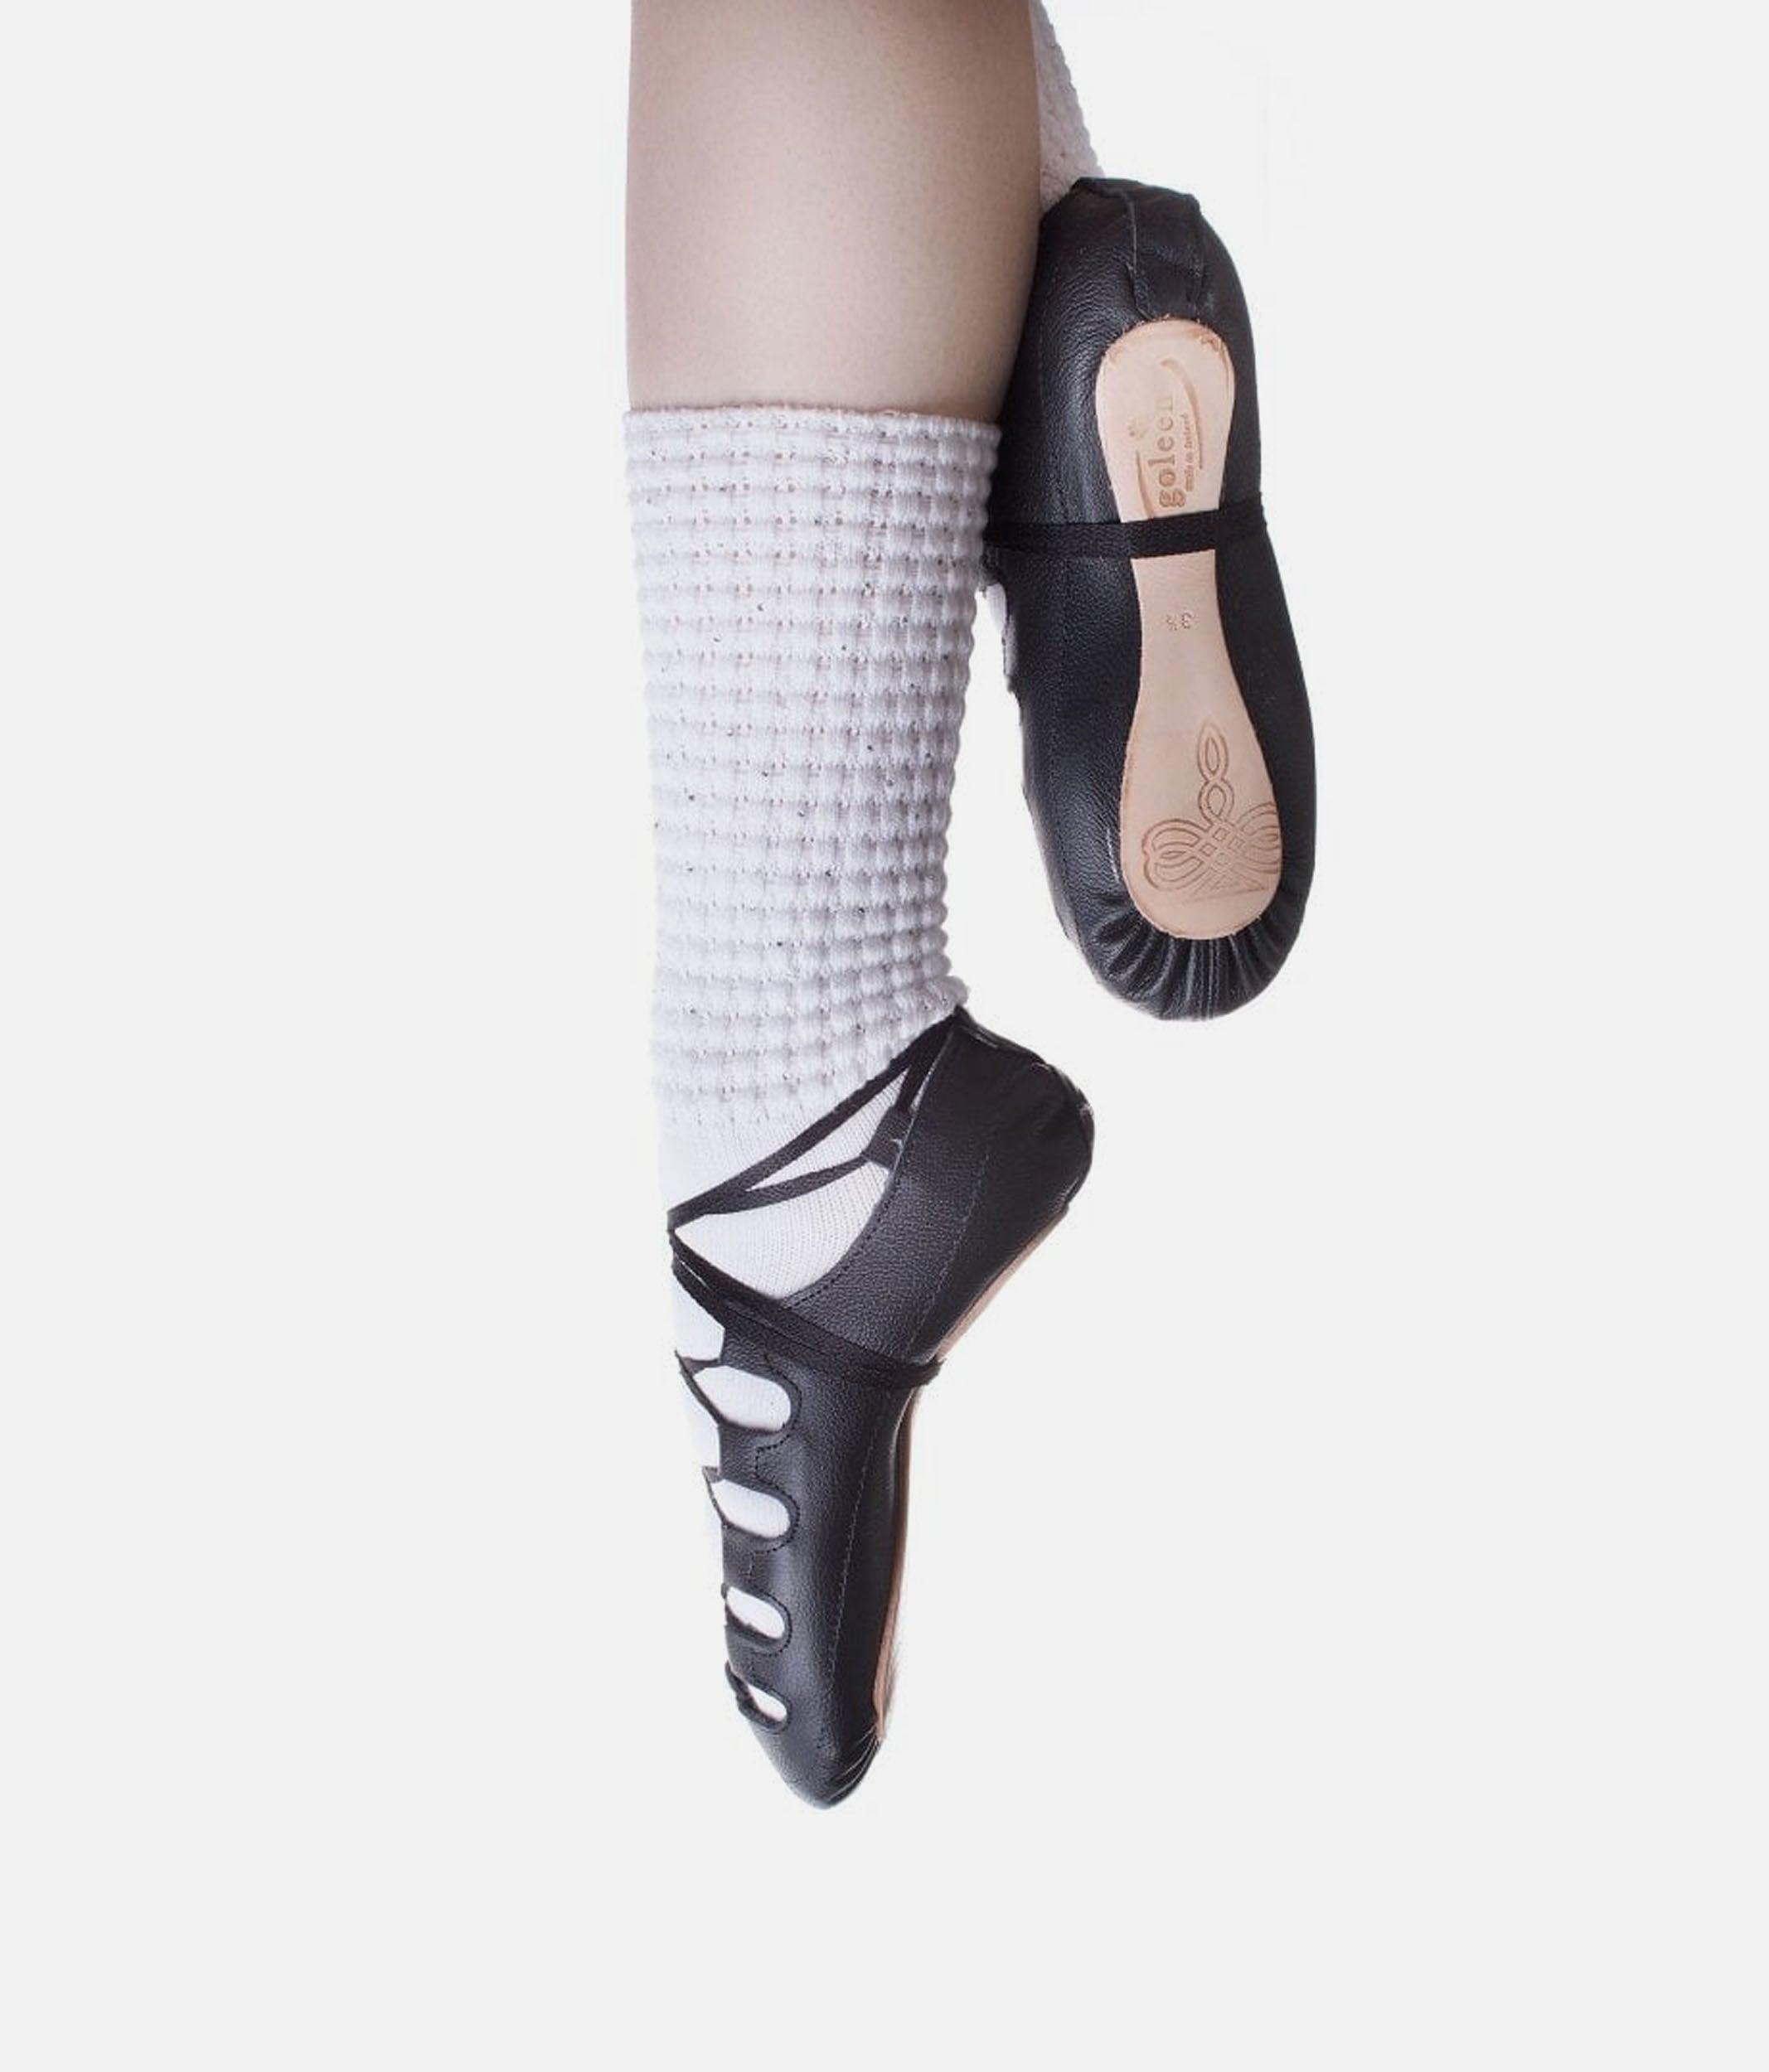 Irish Dance Socks – Clic Clothing